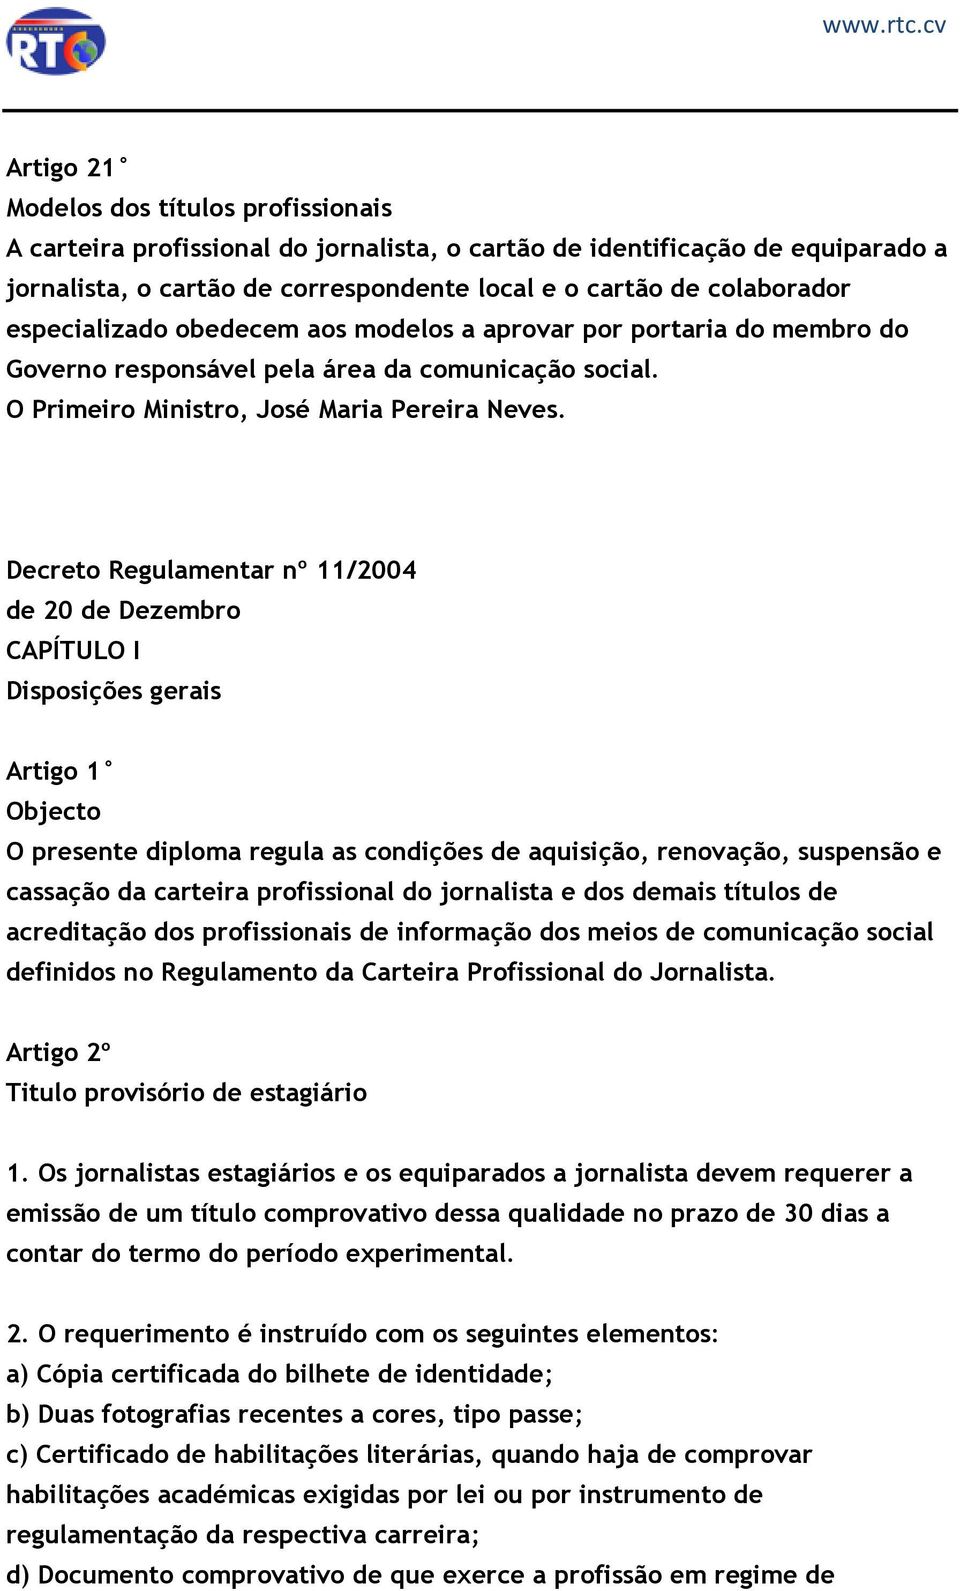 Regulamento da Carteira Profissional dos Jornalistas - PDF Download grátis